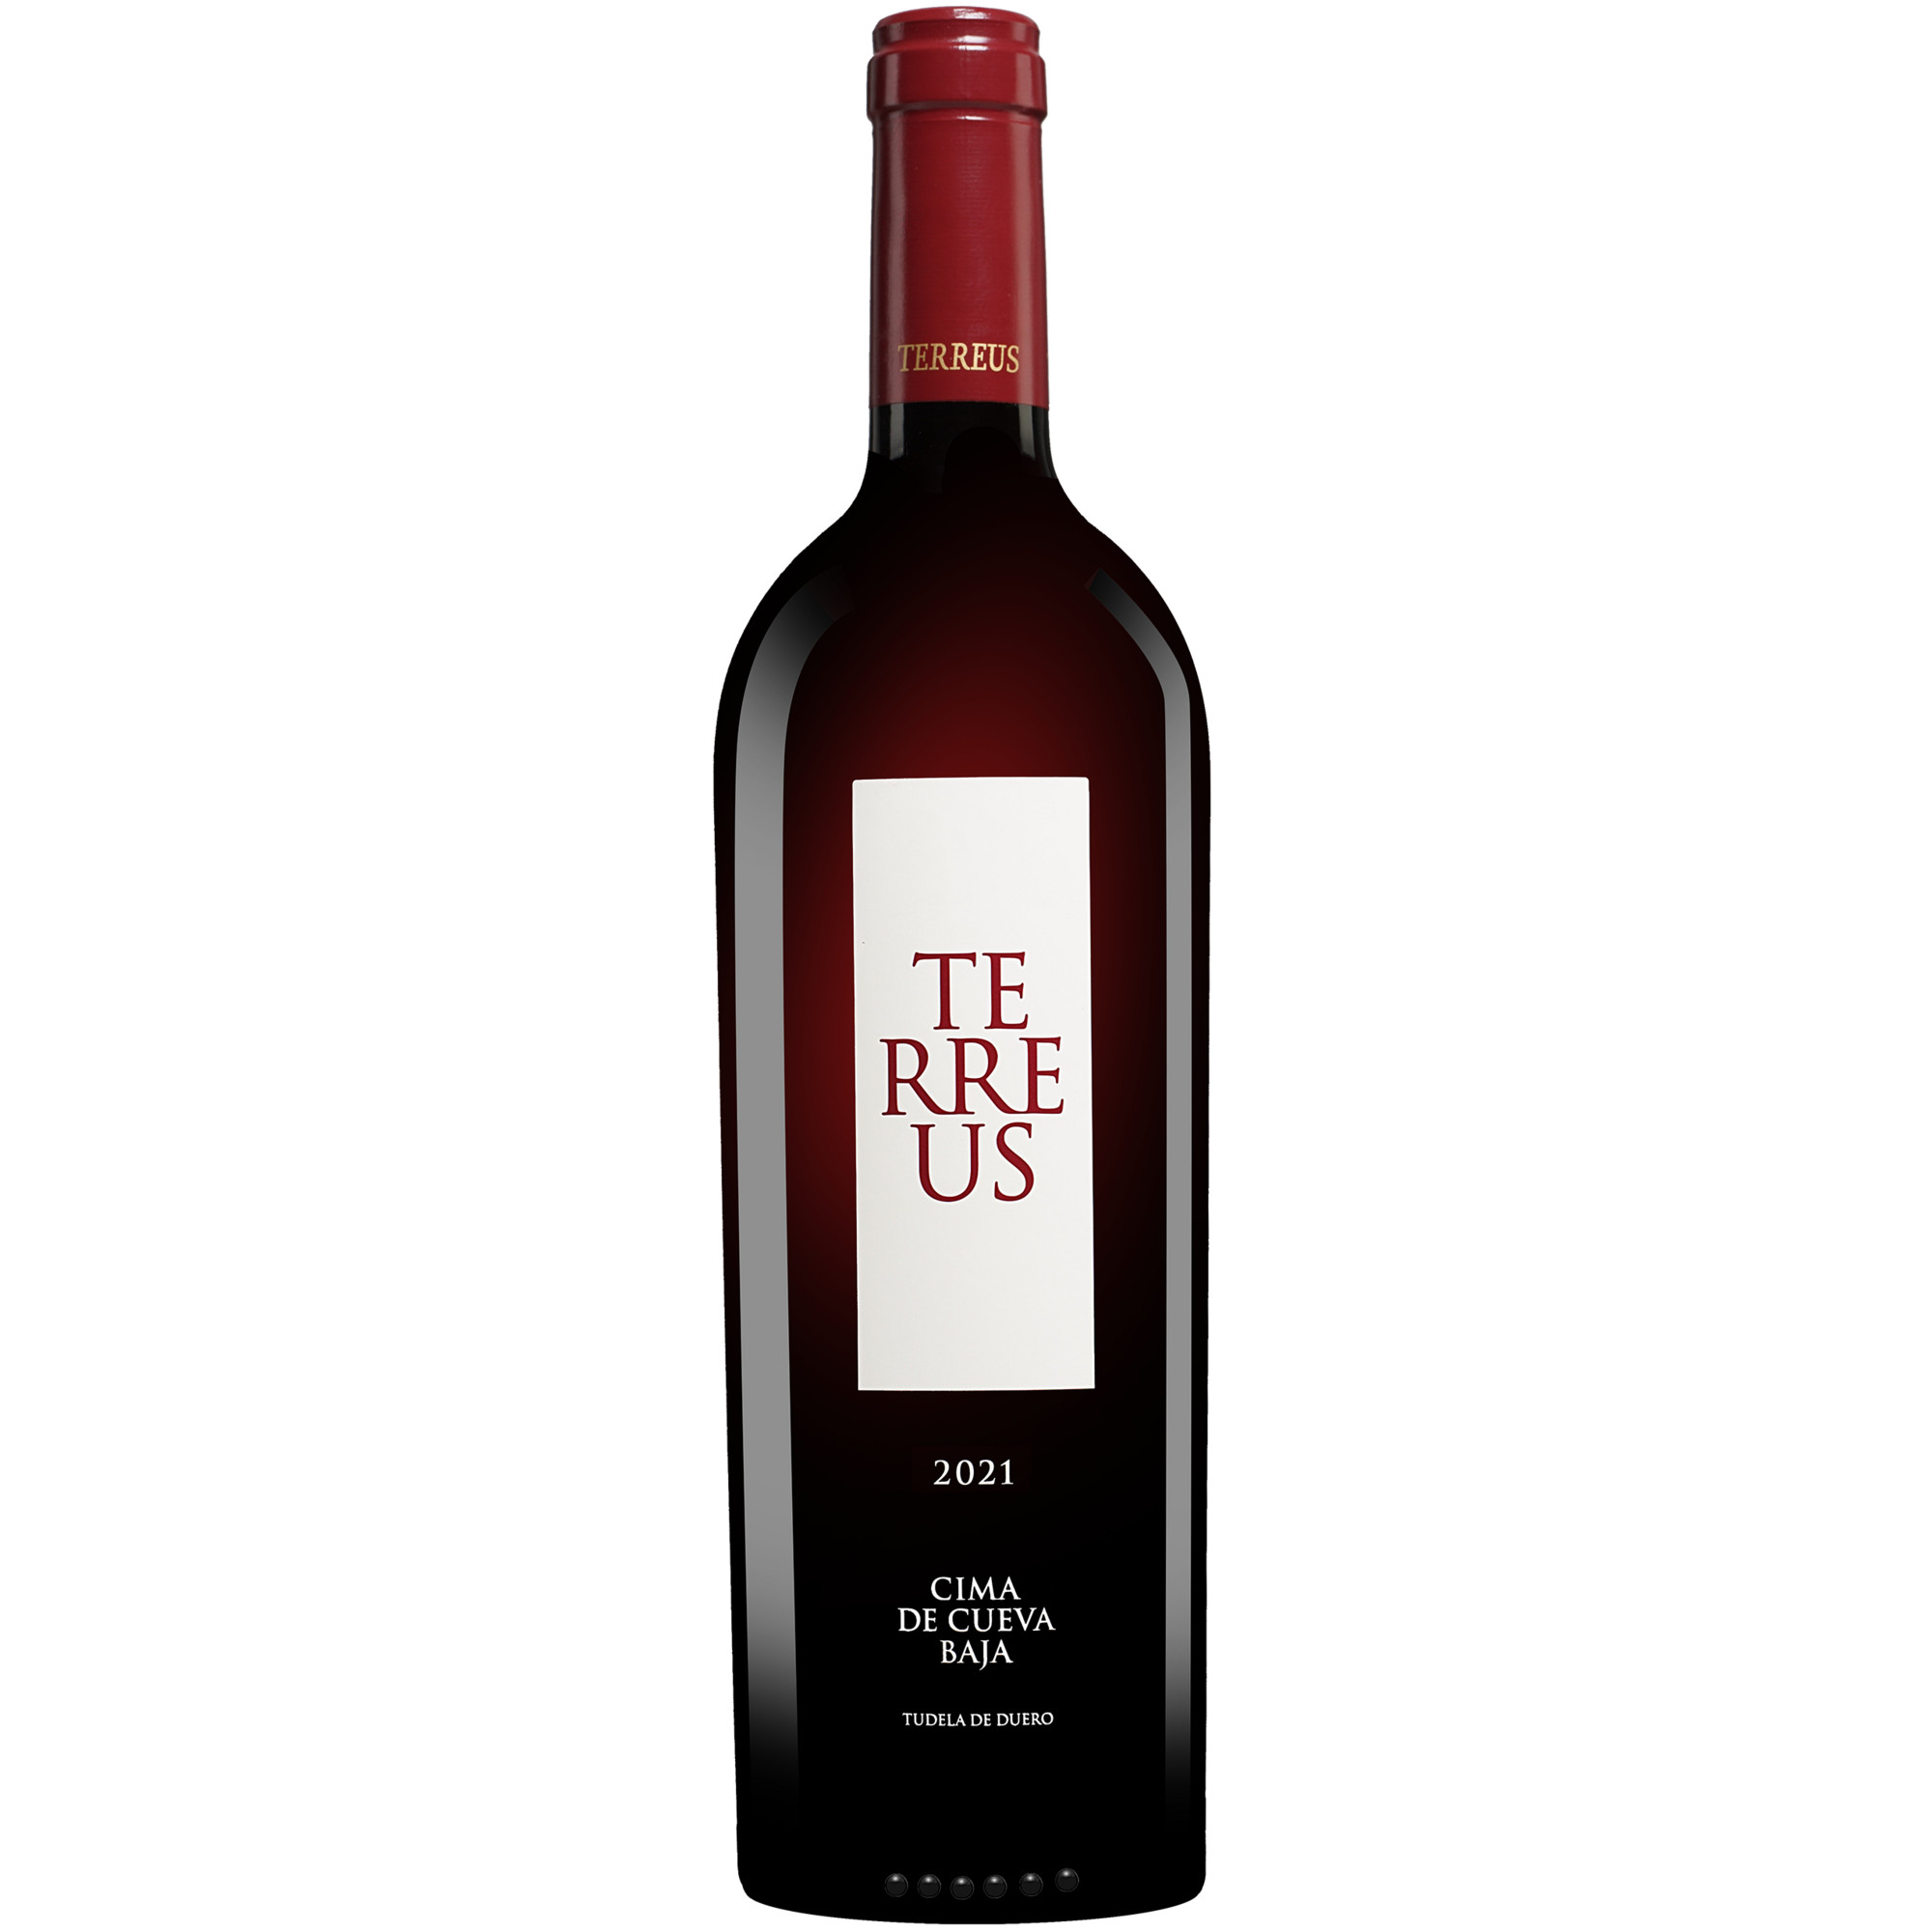 Mauro »Terreus« 2021  014.5% Vol. Rotwein Trocken aus Spanien